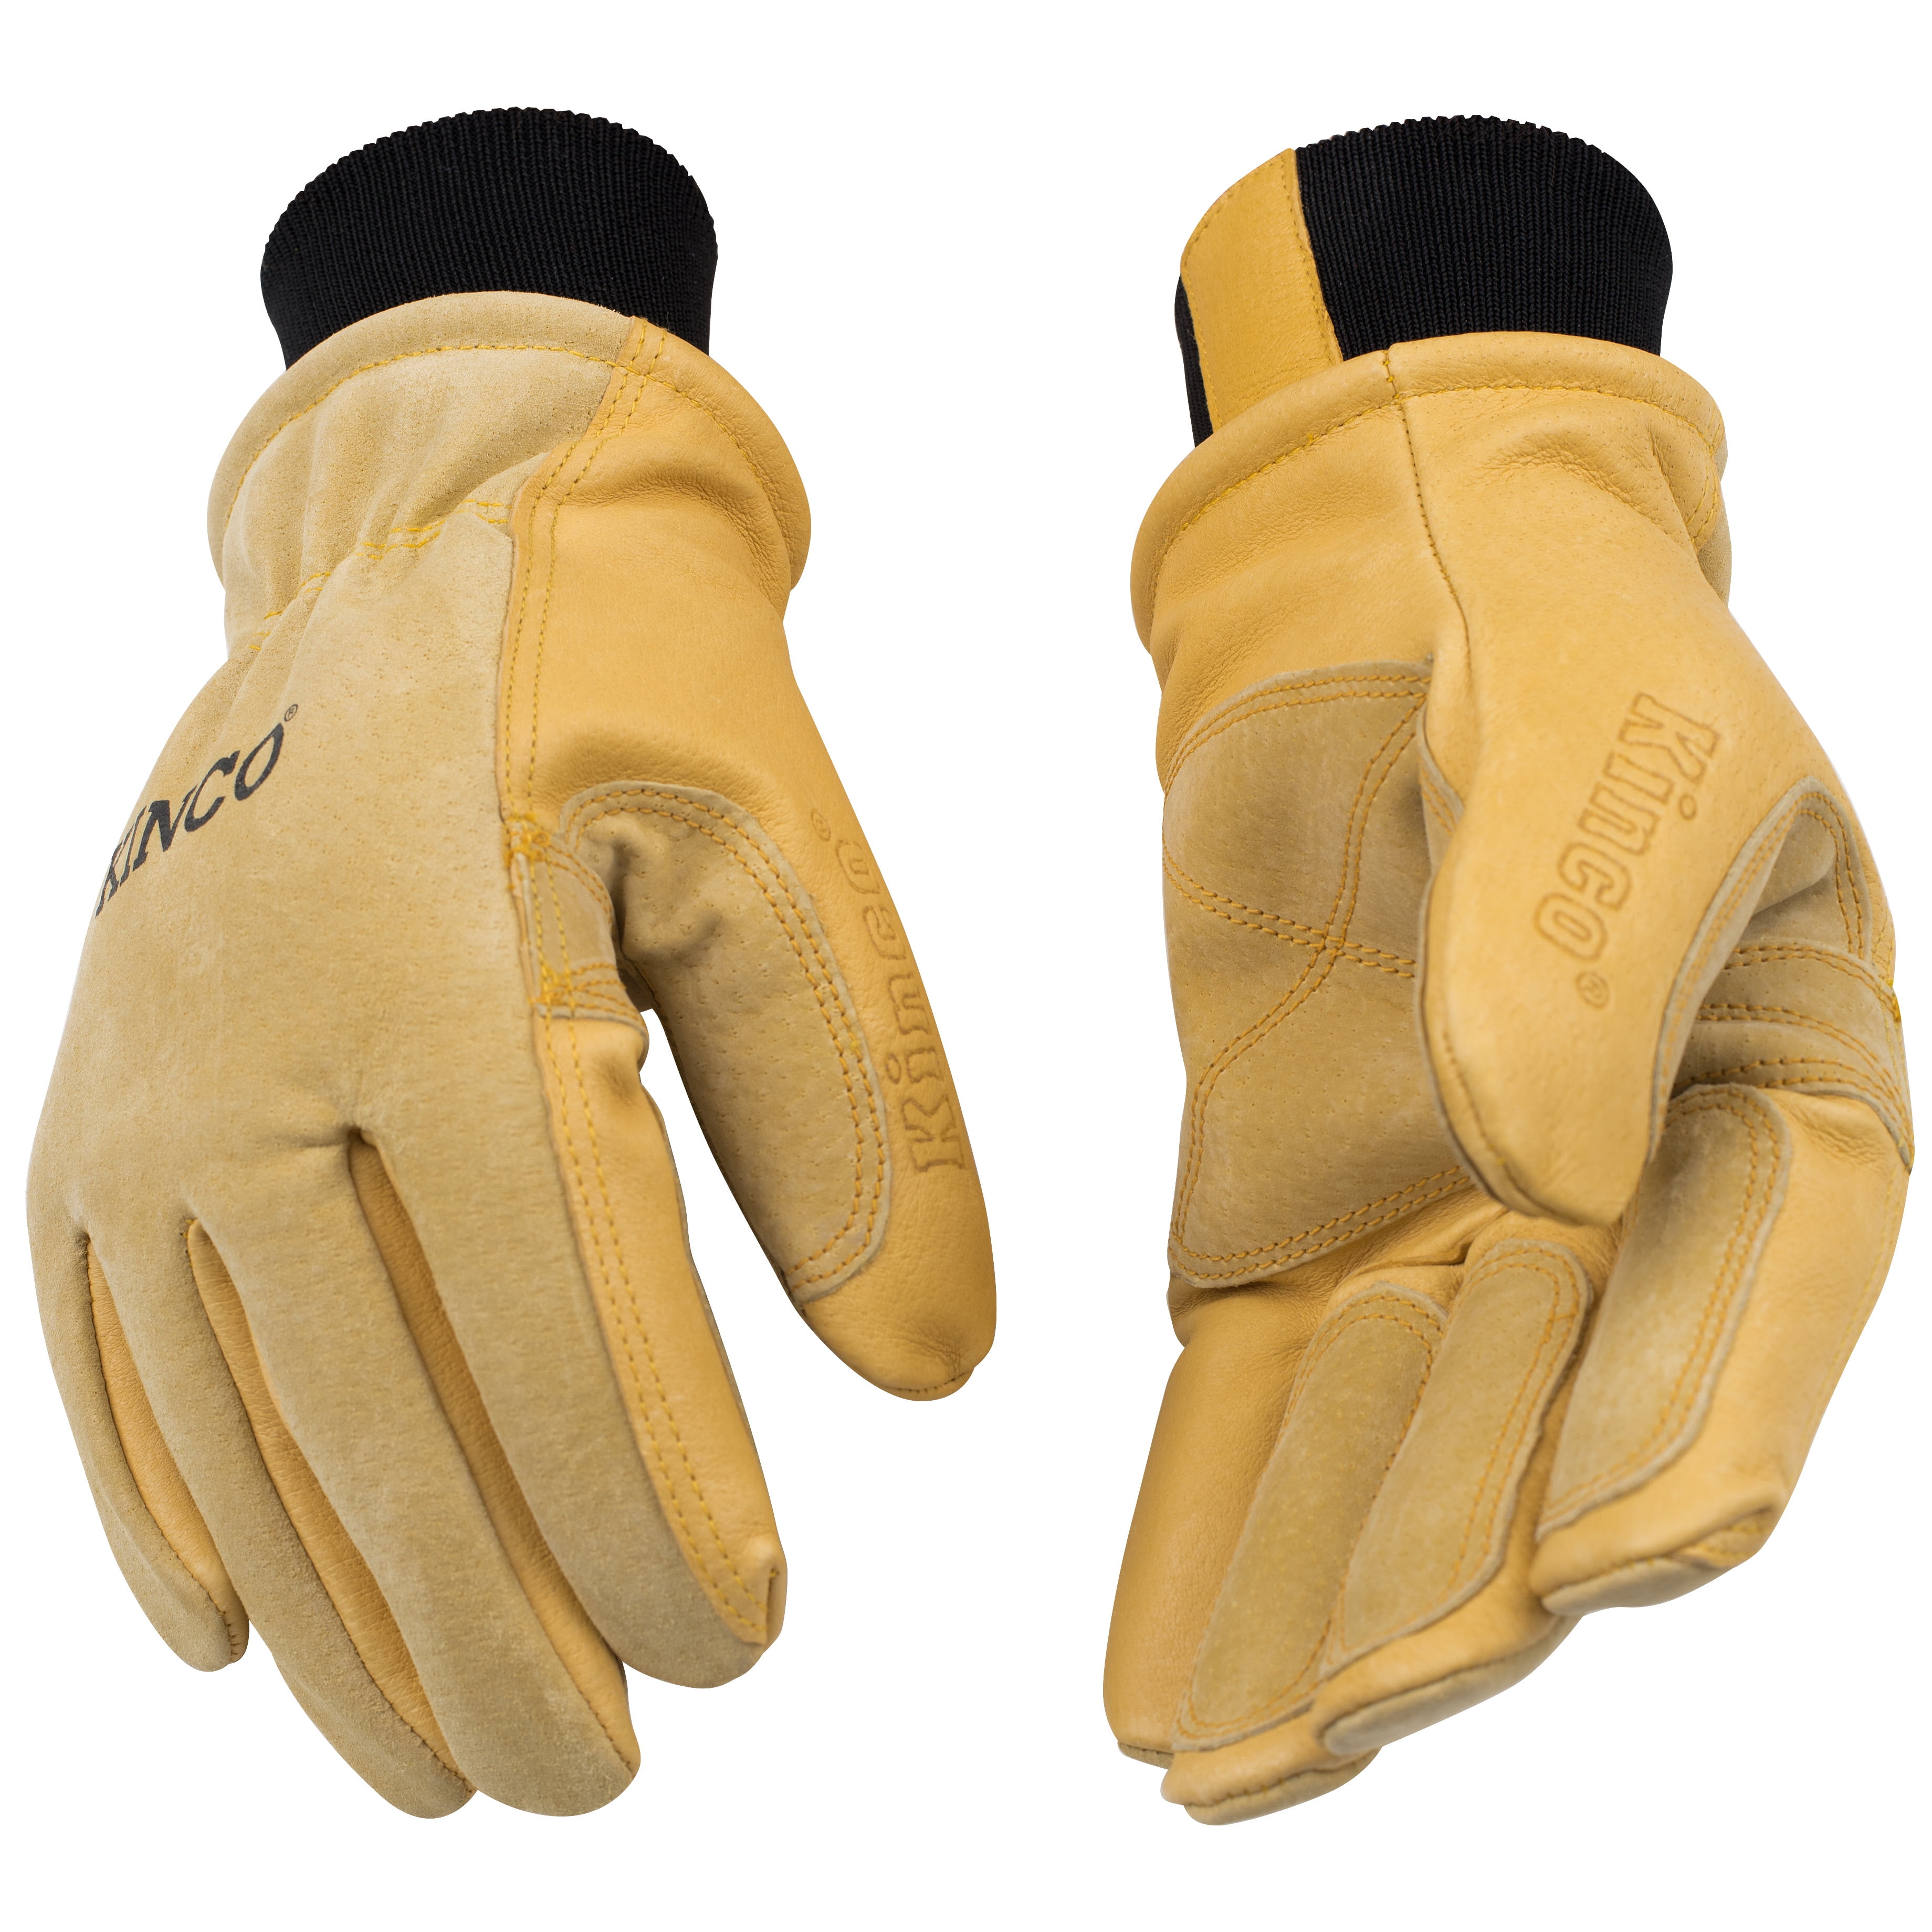 Kinco 901 Leather Ski Gloves